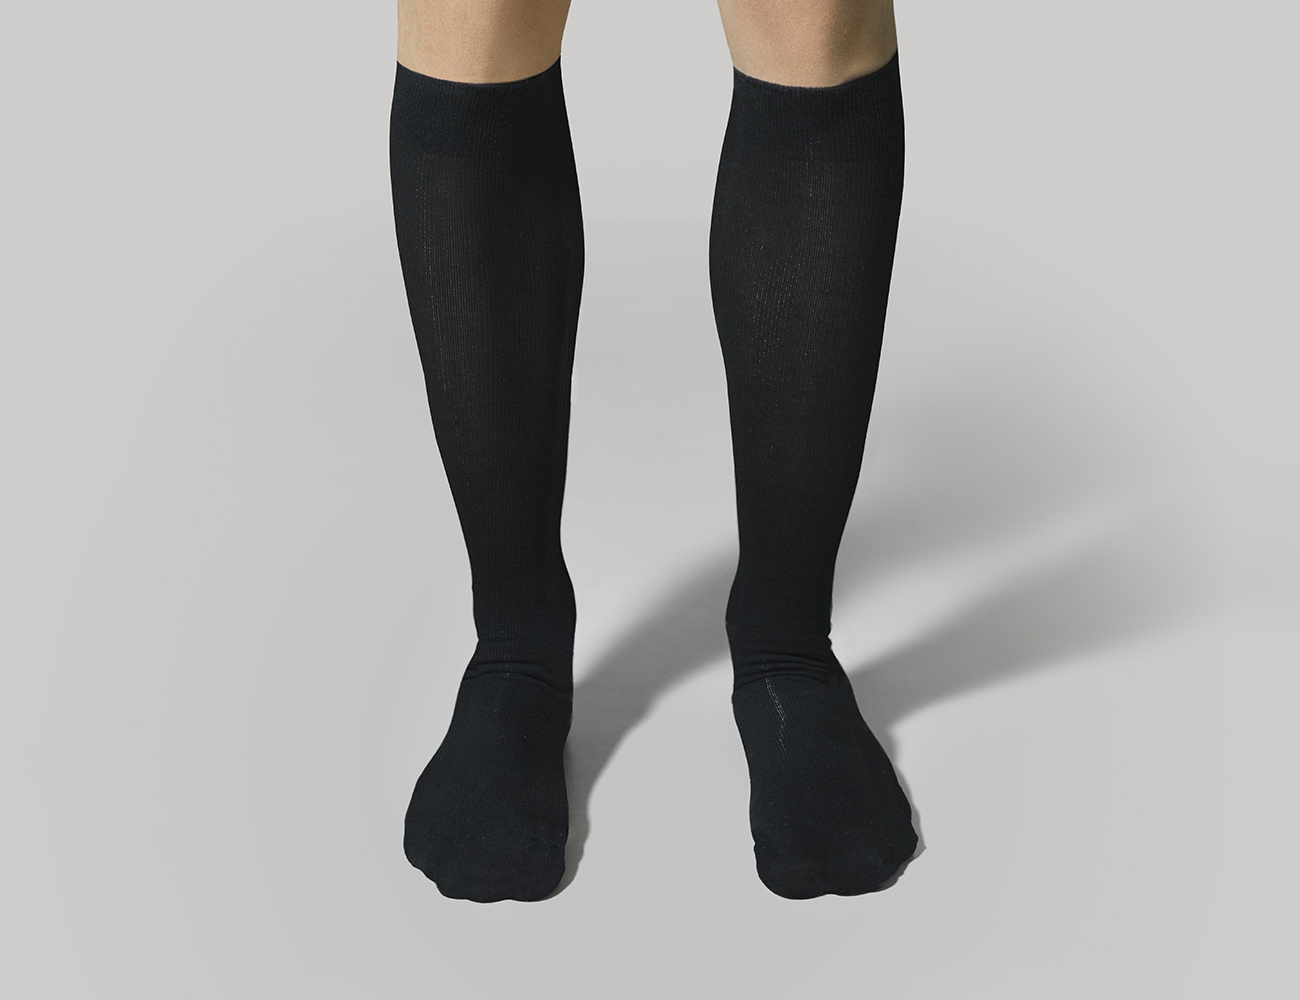 Αντρικές Κάλτσες Διαβαθμισμένης Συμπίεσης Light Edition Black